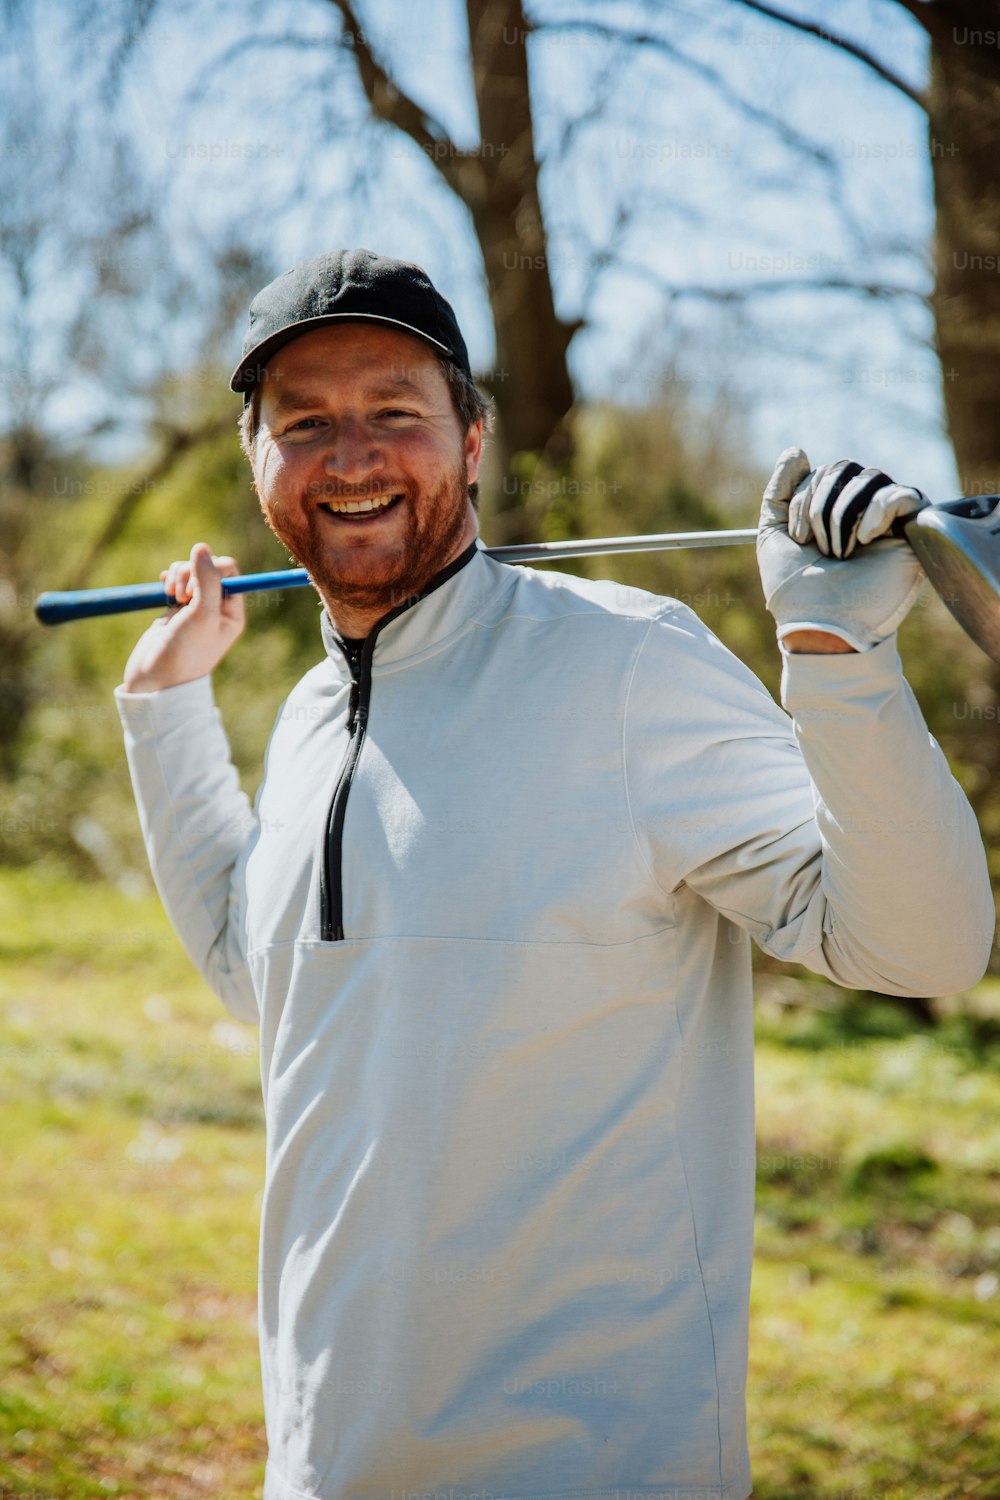 Ein Mann, der einen Golfschläger hält und lächelt